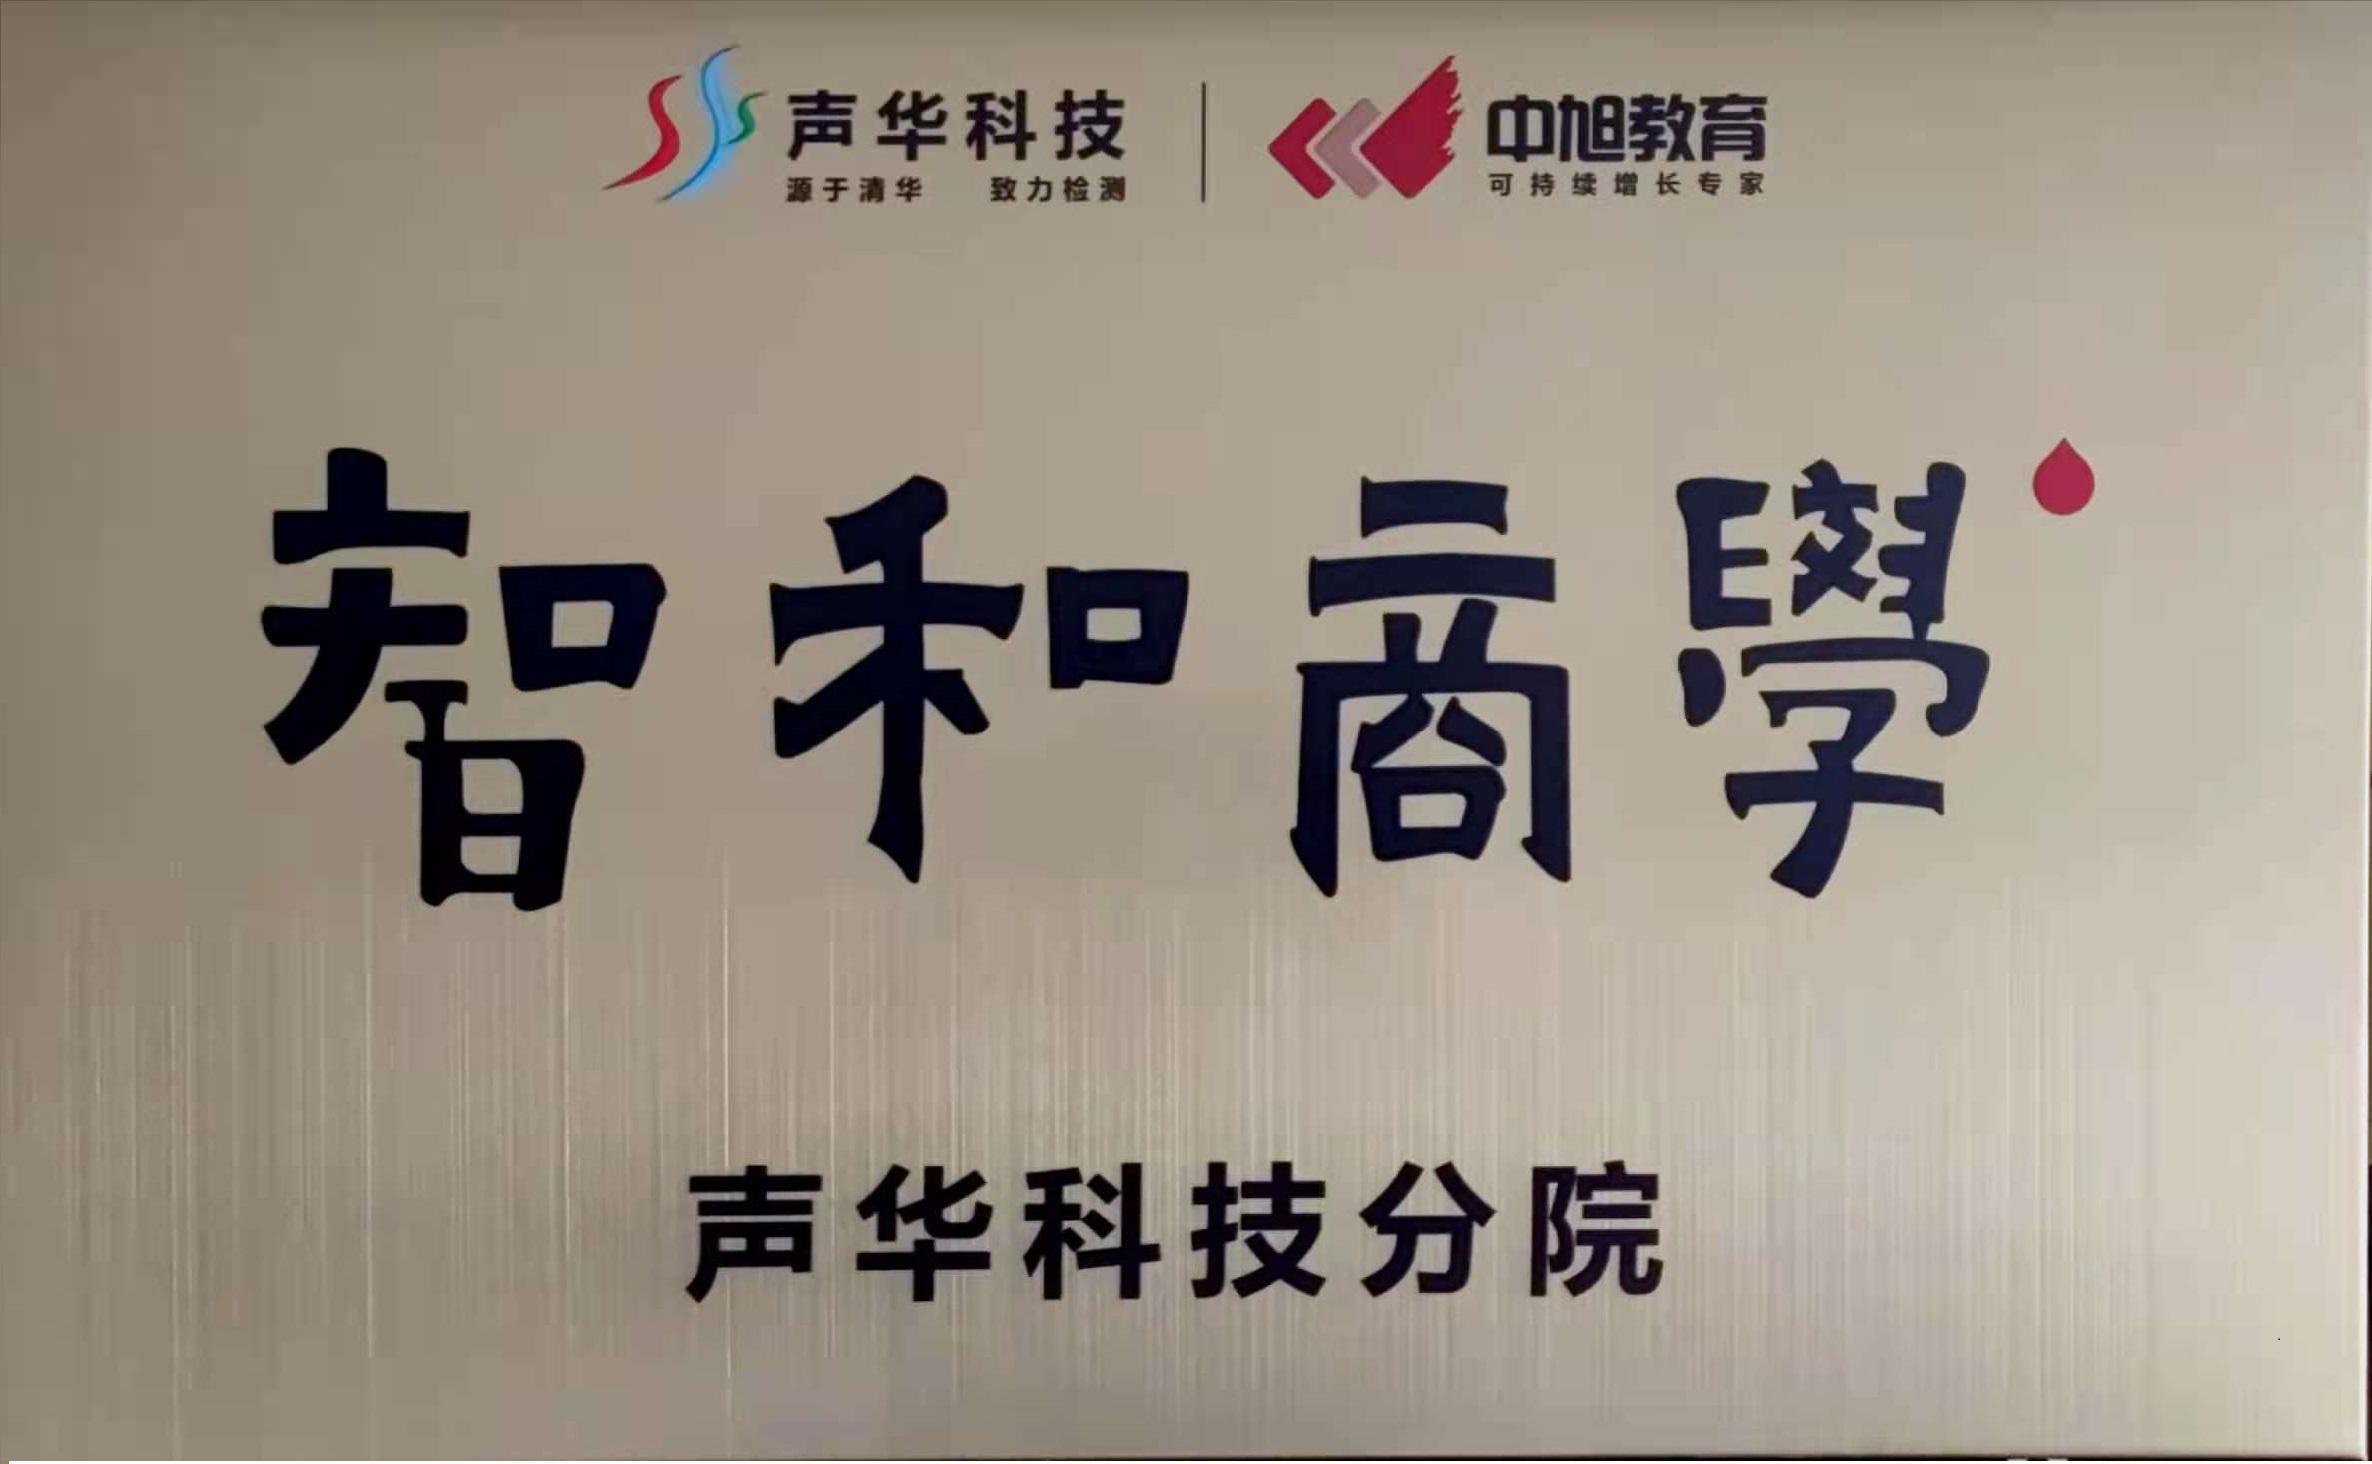 祝贺,广州,js6668金沙登录入口欢迎您,科技,股份有限公司,“,为了